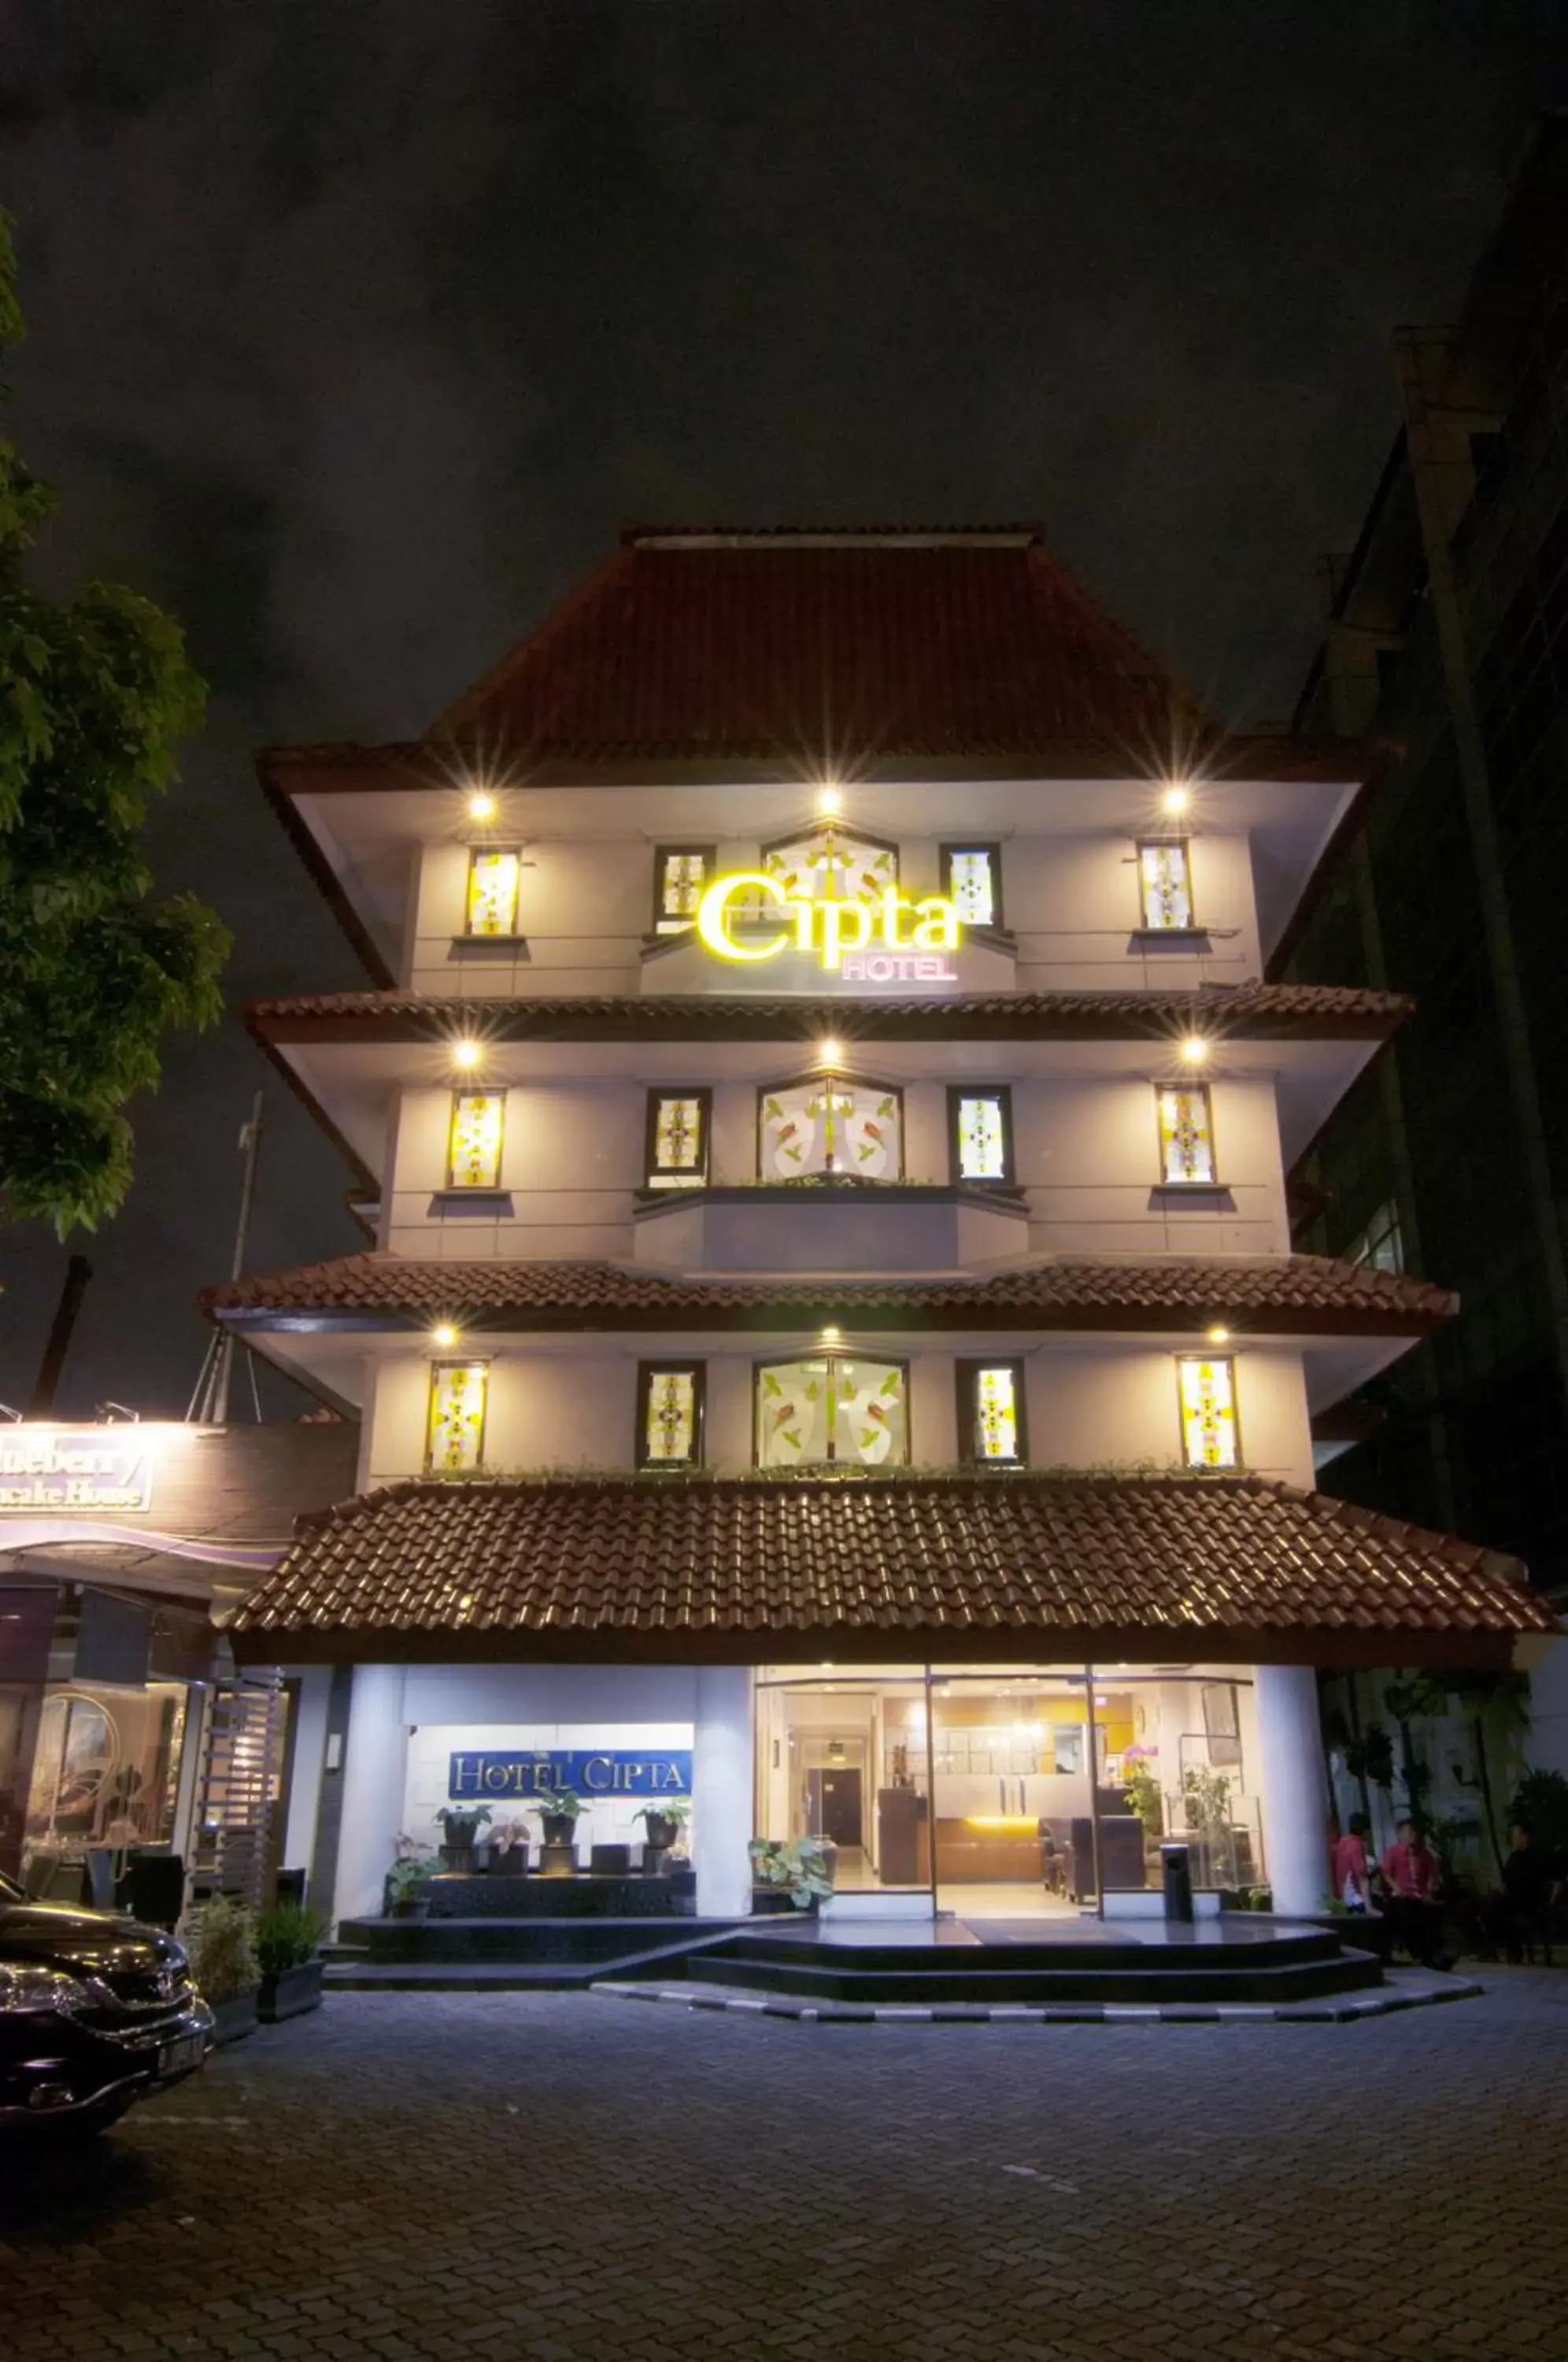 Property Building in Cipta Hotel Wahid Hasyim